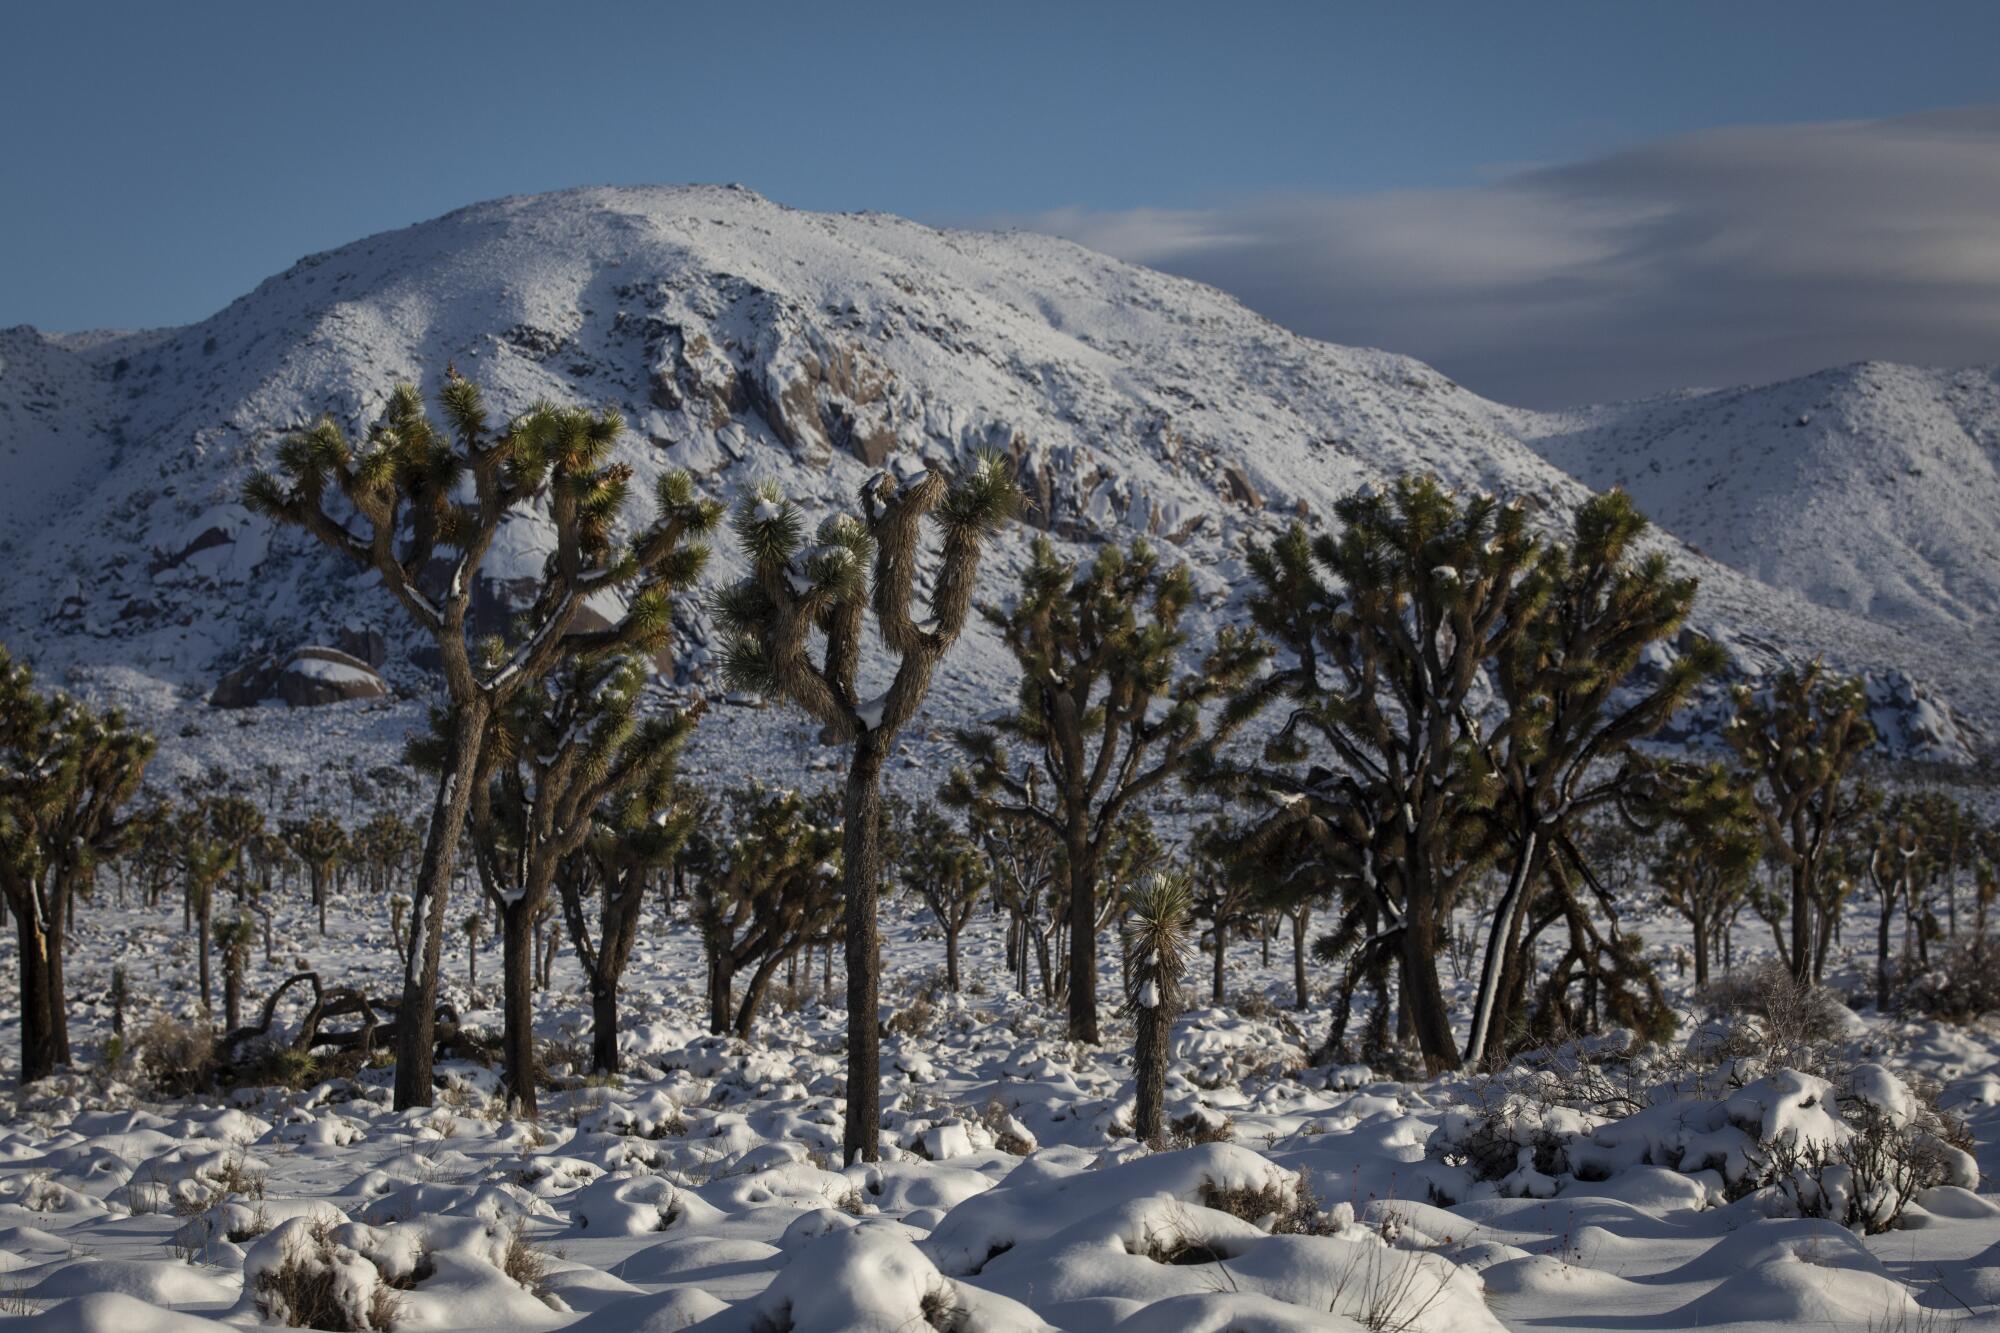 Joshua-Bäume ragen aus einer schneebedeckten Wüste.